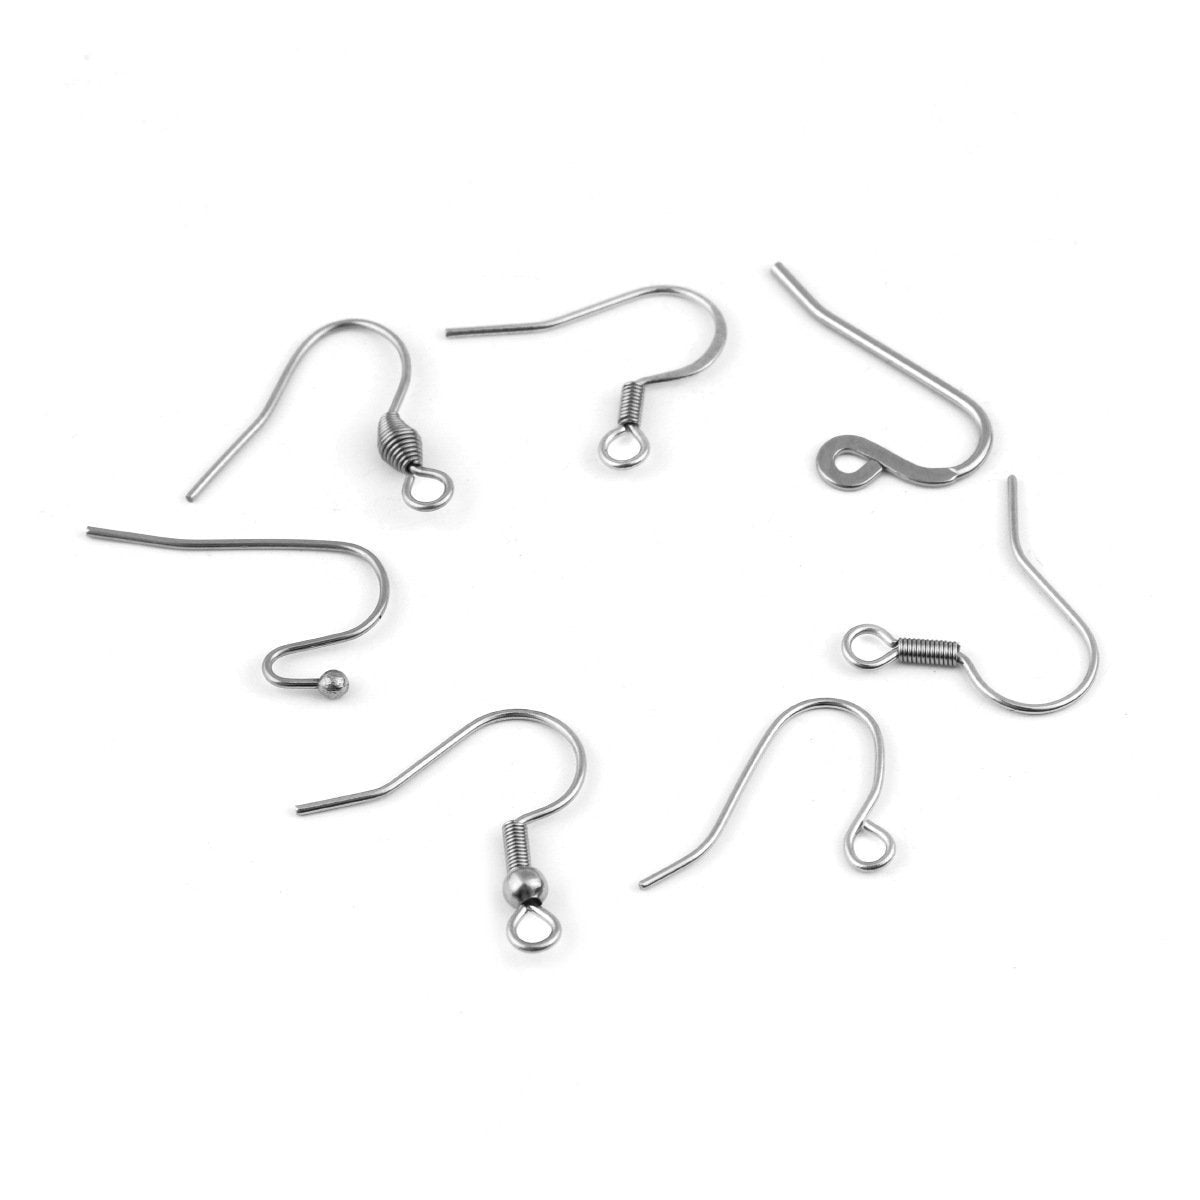 Stainless steel earring hooks 50 pcs (25 pairs) - Nickel free, lead fr